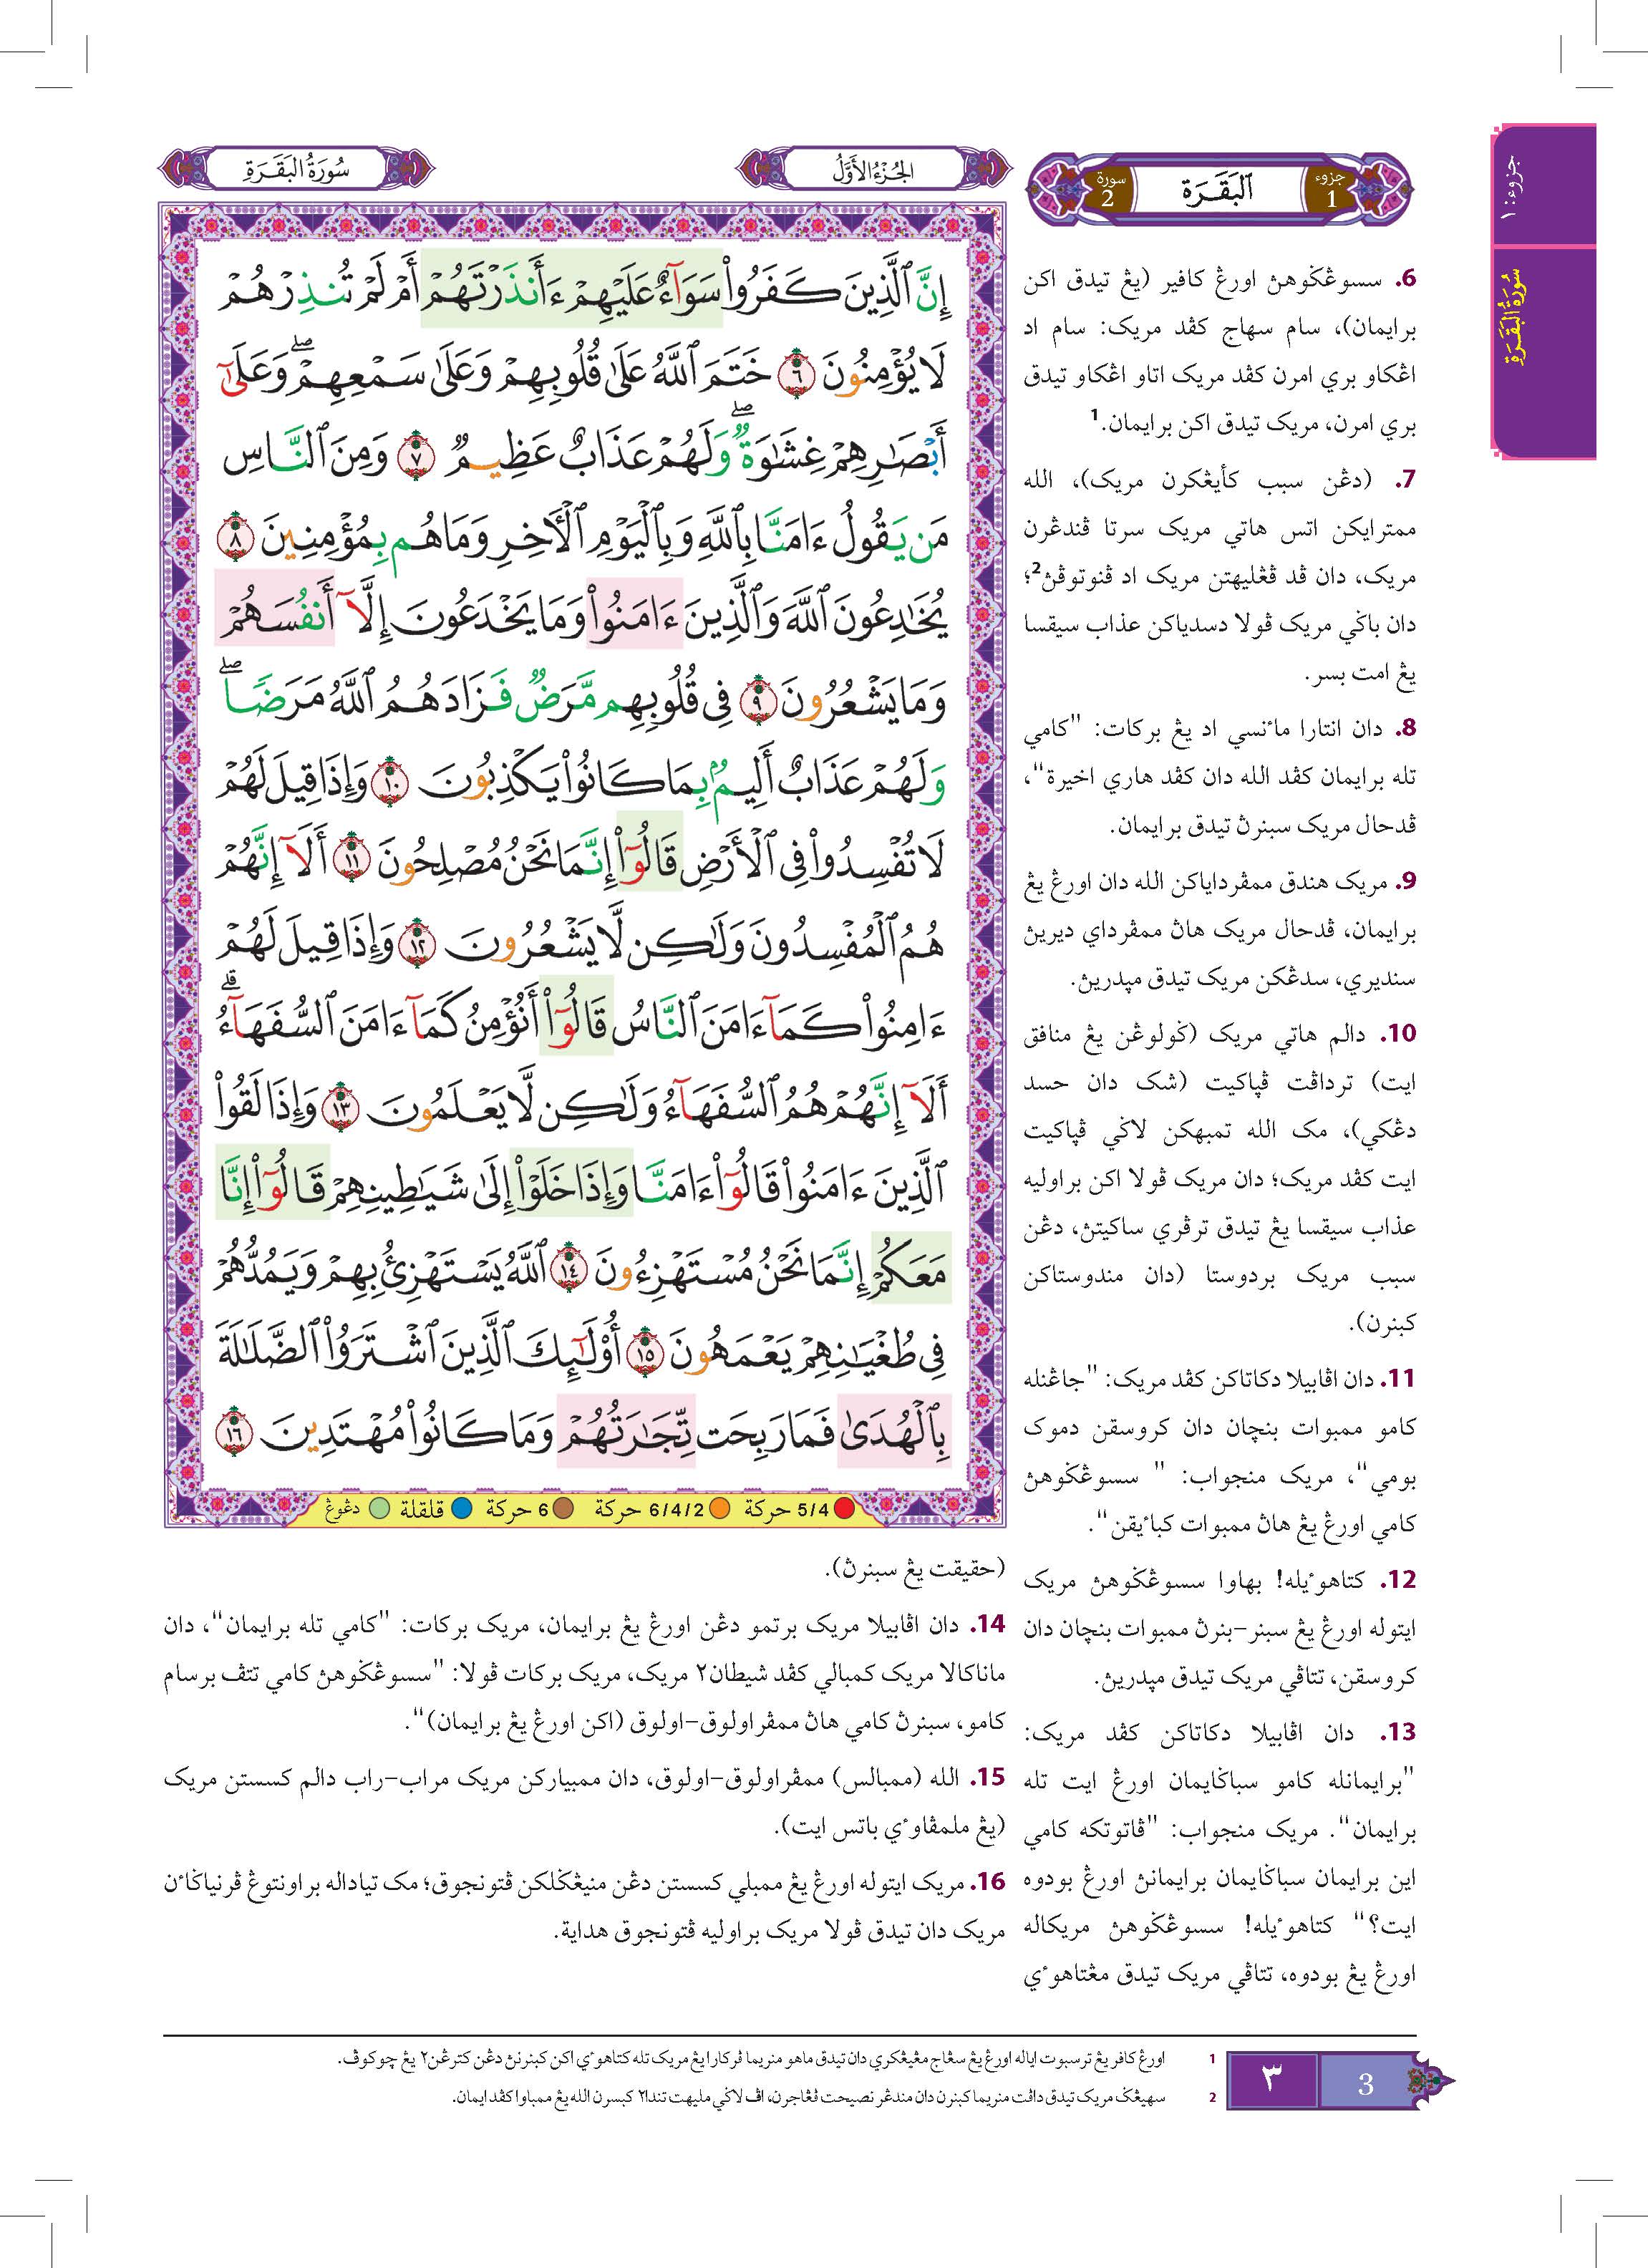 Al-Quran Al-Karim Tajwid Dan Terjemahan Al-Jawahir Berserta Panduan Waqaf & Ibtida' - (TBAQ1060)